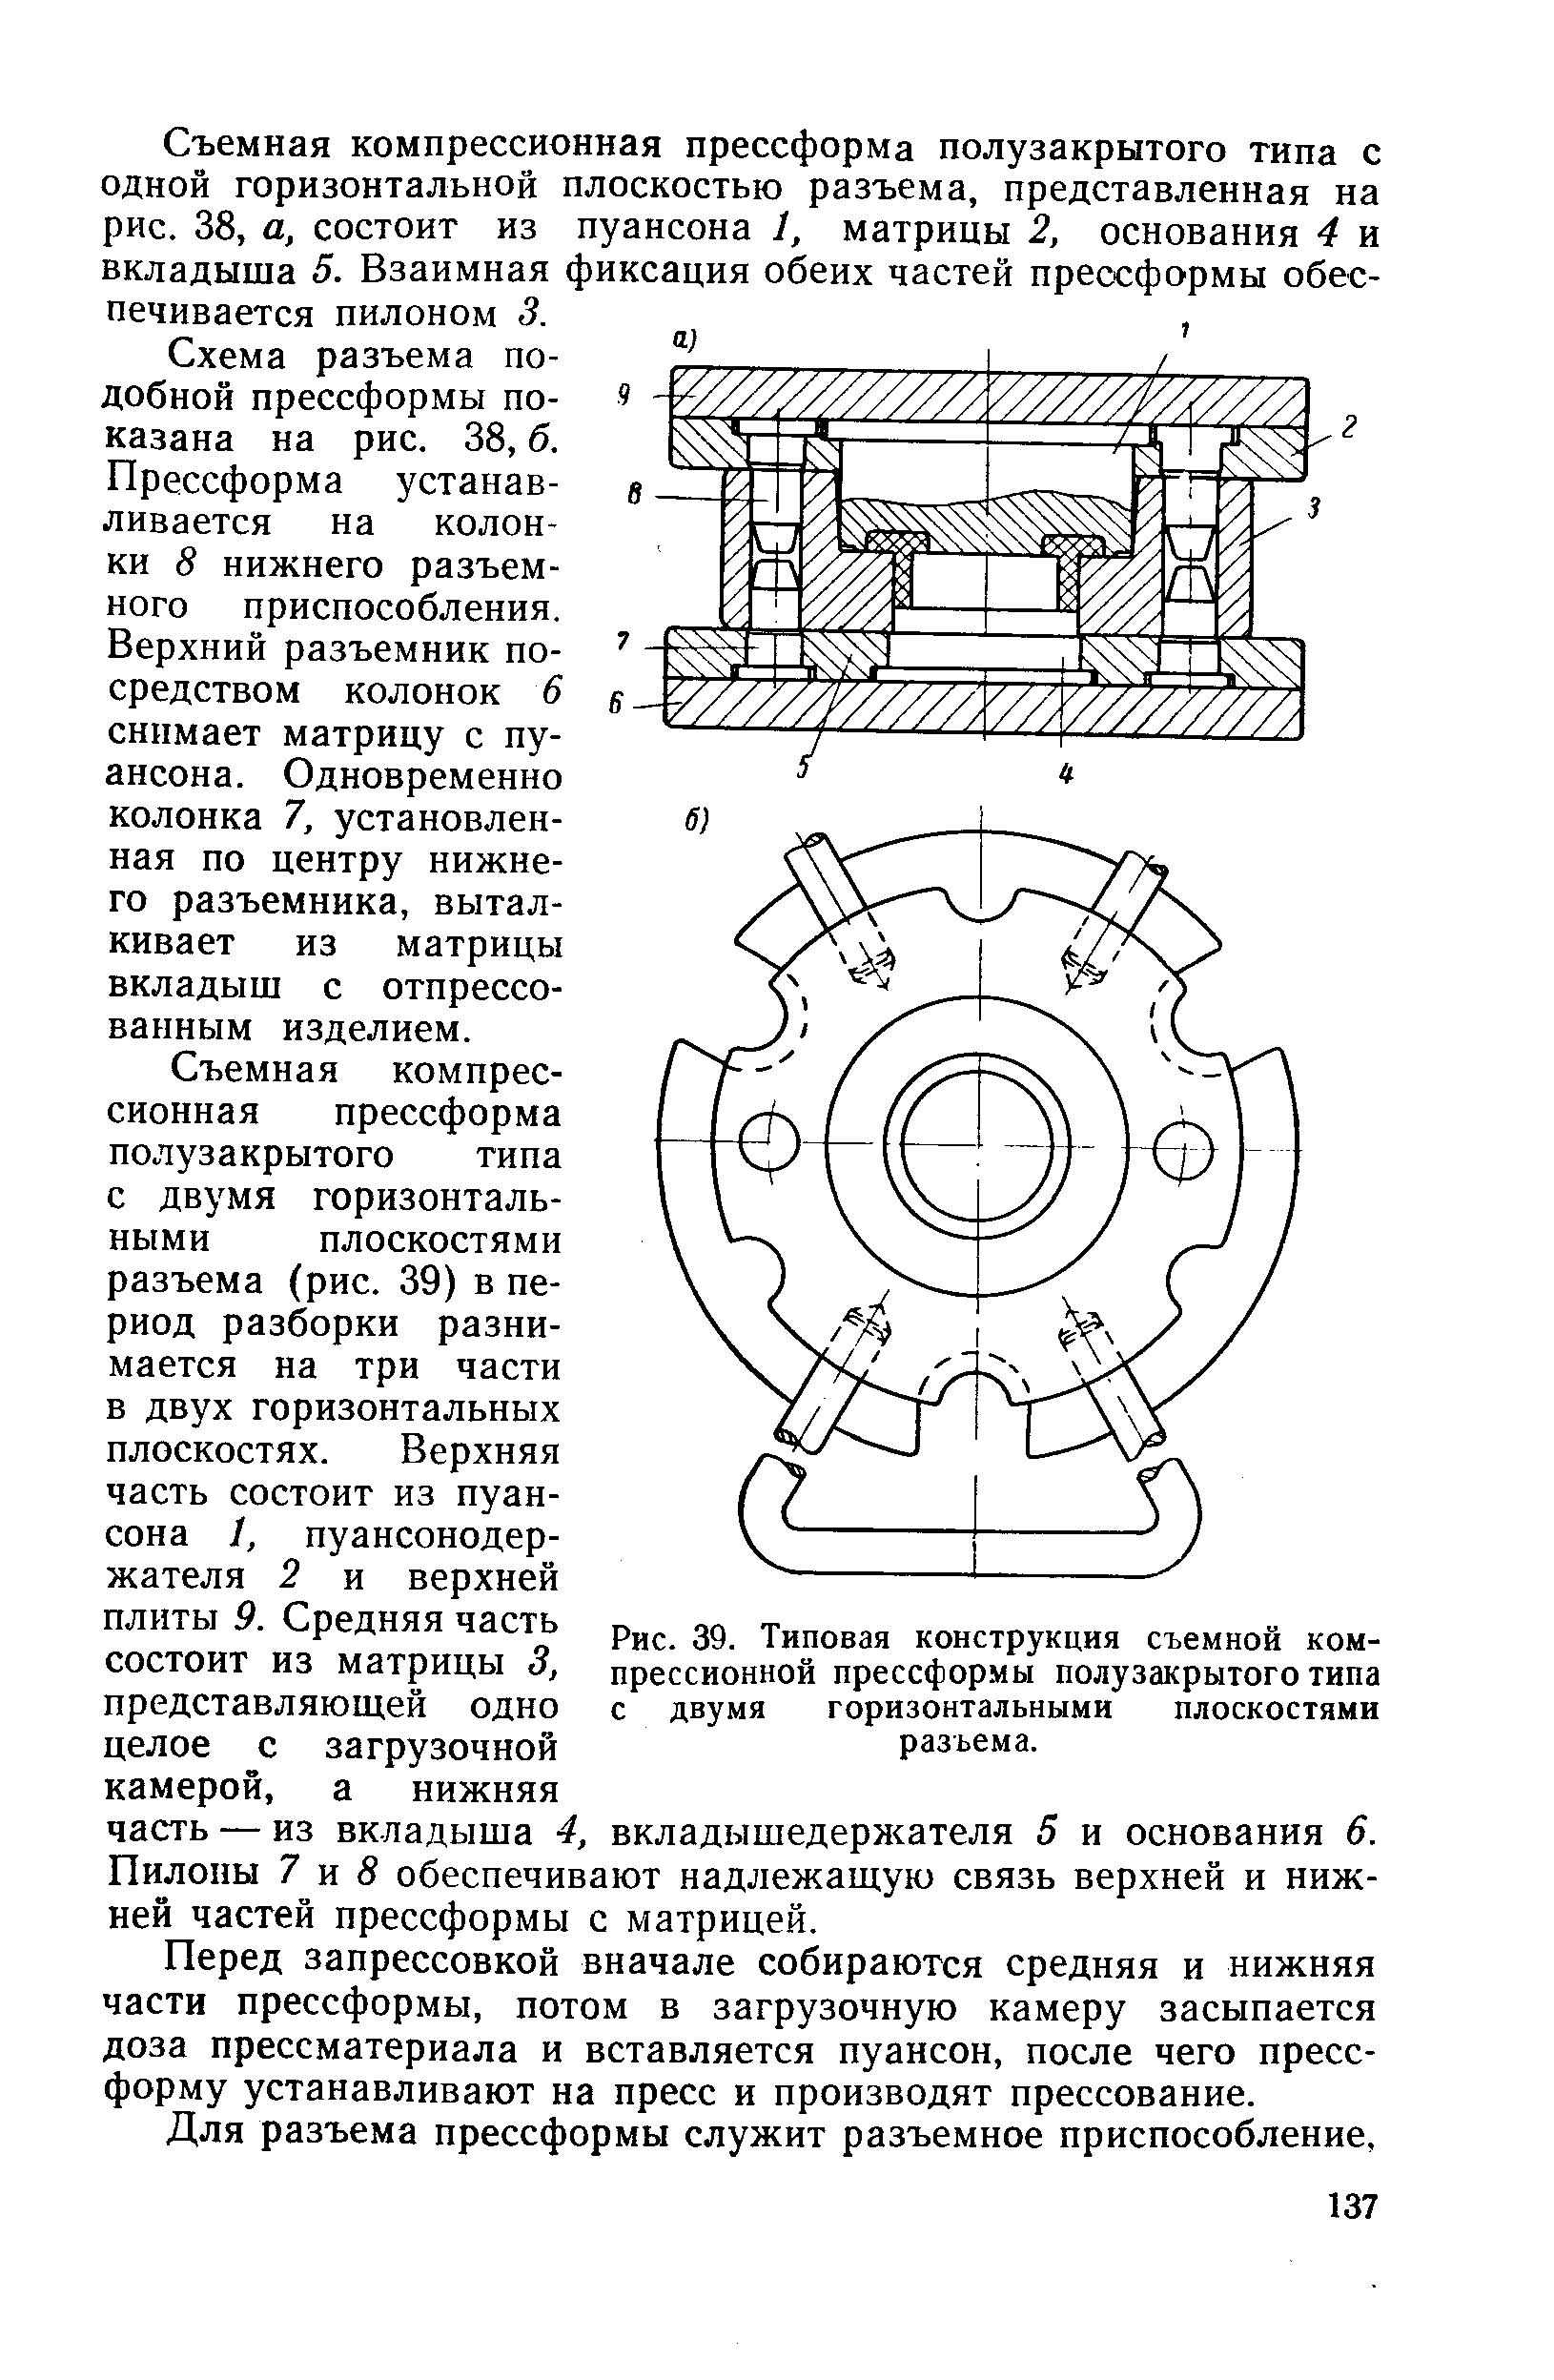 Рис. 39. Типовая конструкция съемной компрессионной прессформы полузакрытого типа с двумя горизонтальными плоскостями разъема.
